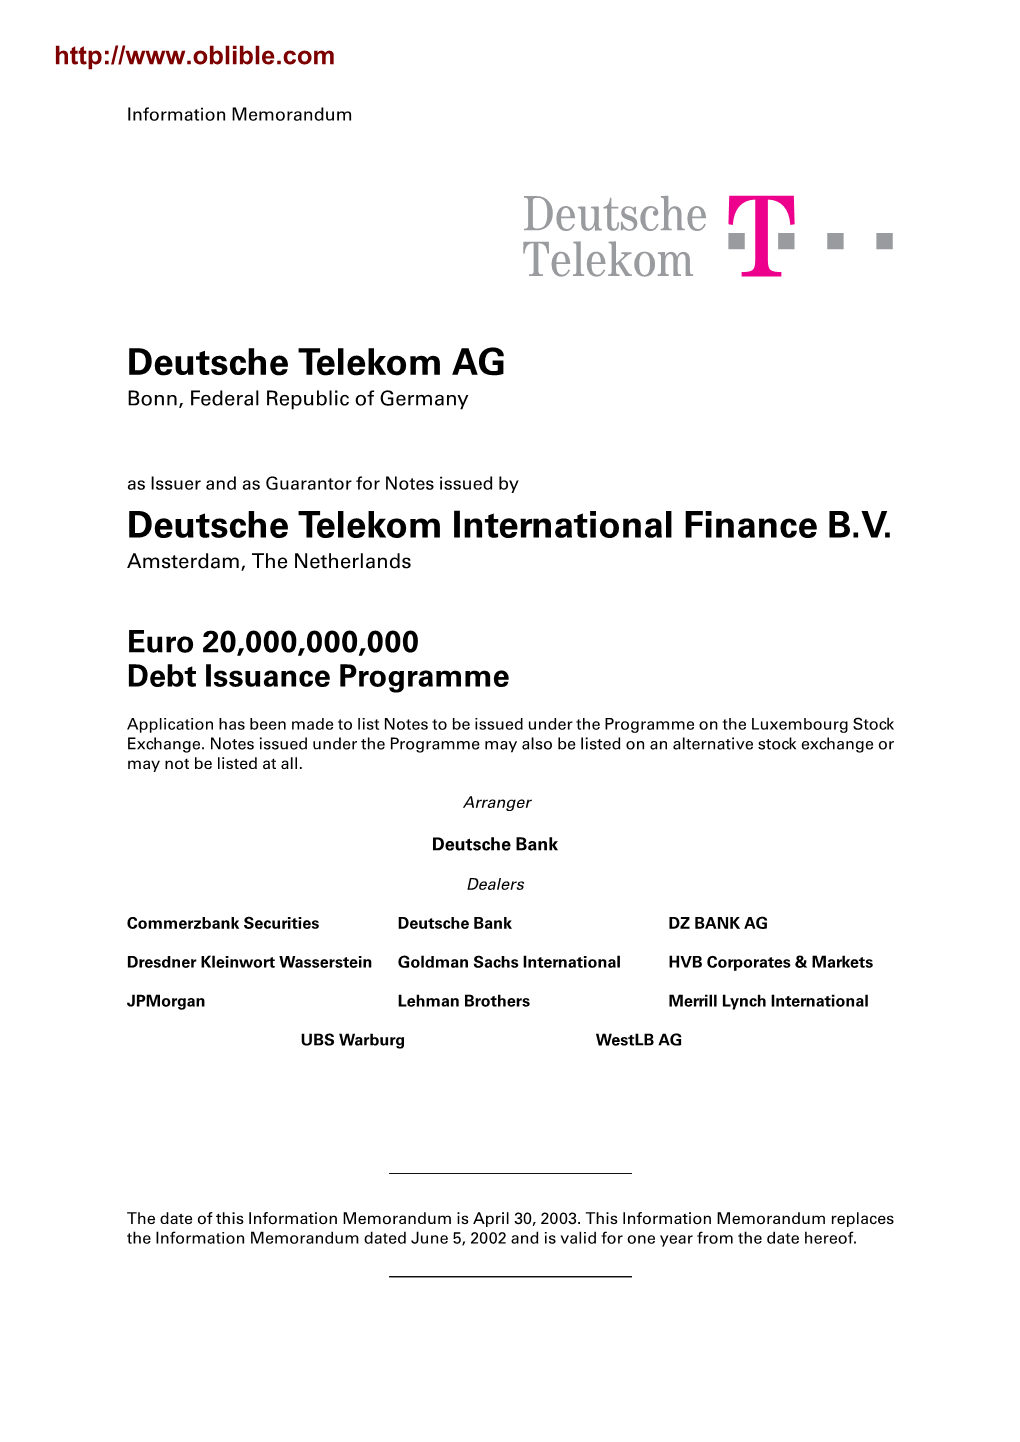 Deutsche Telekom !"§==